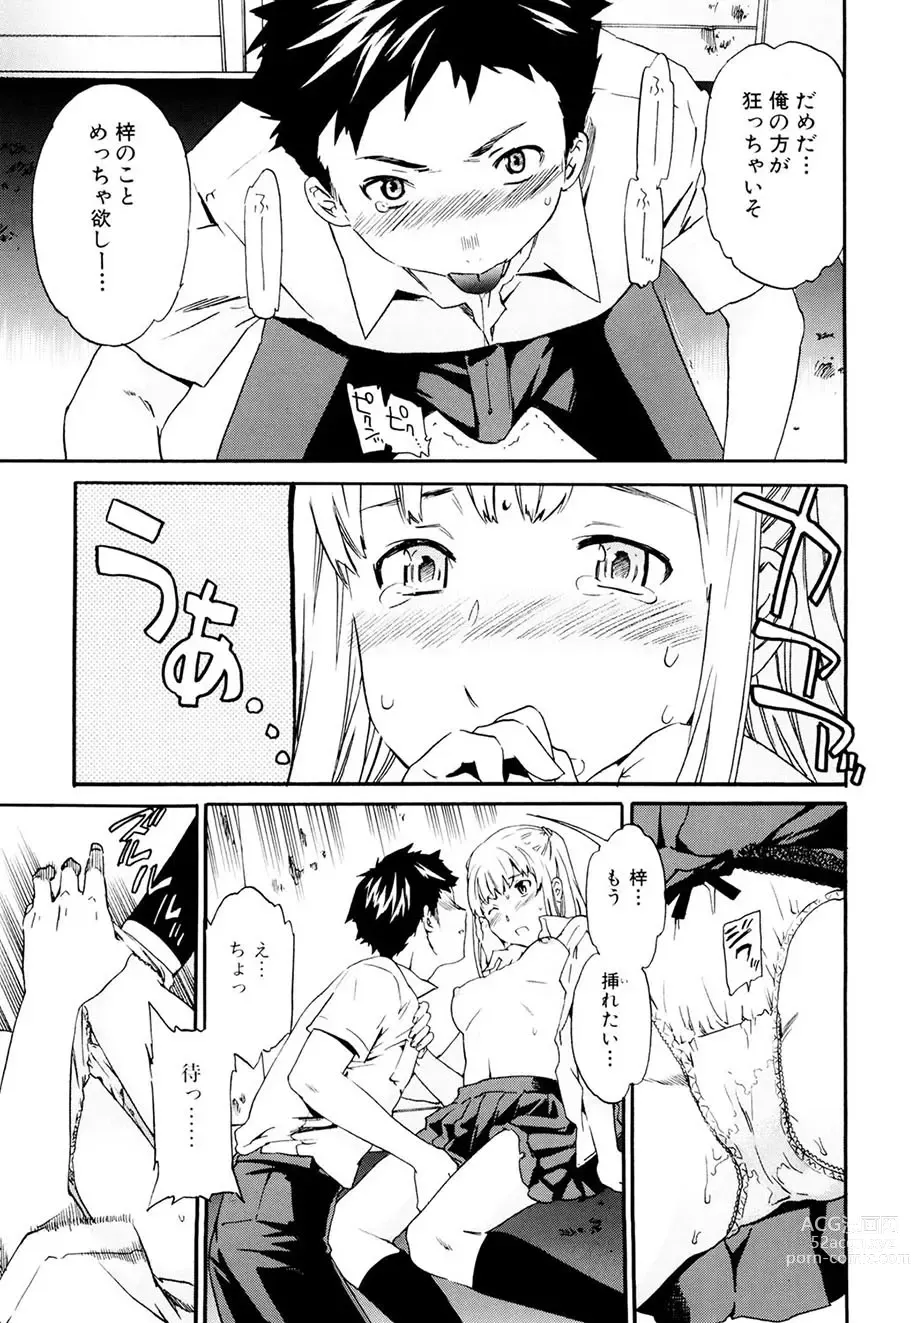 Page 140 of manga Shitai Kara Suru no